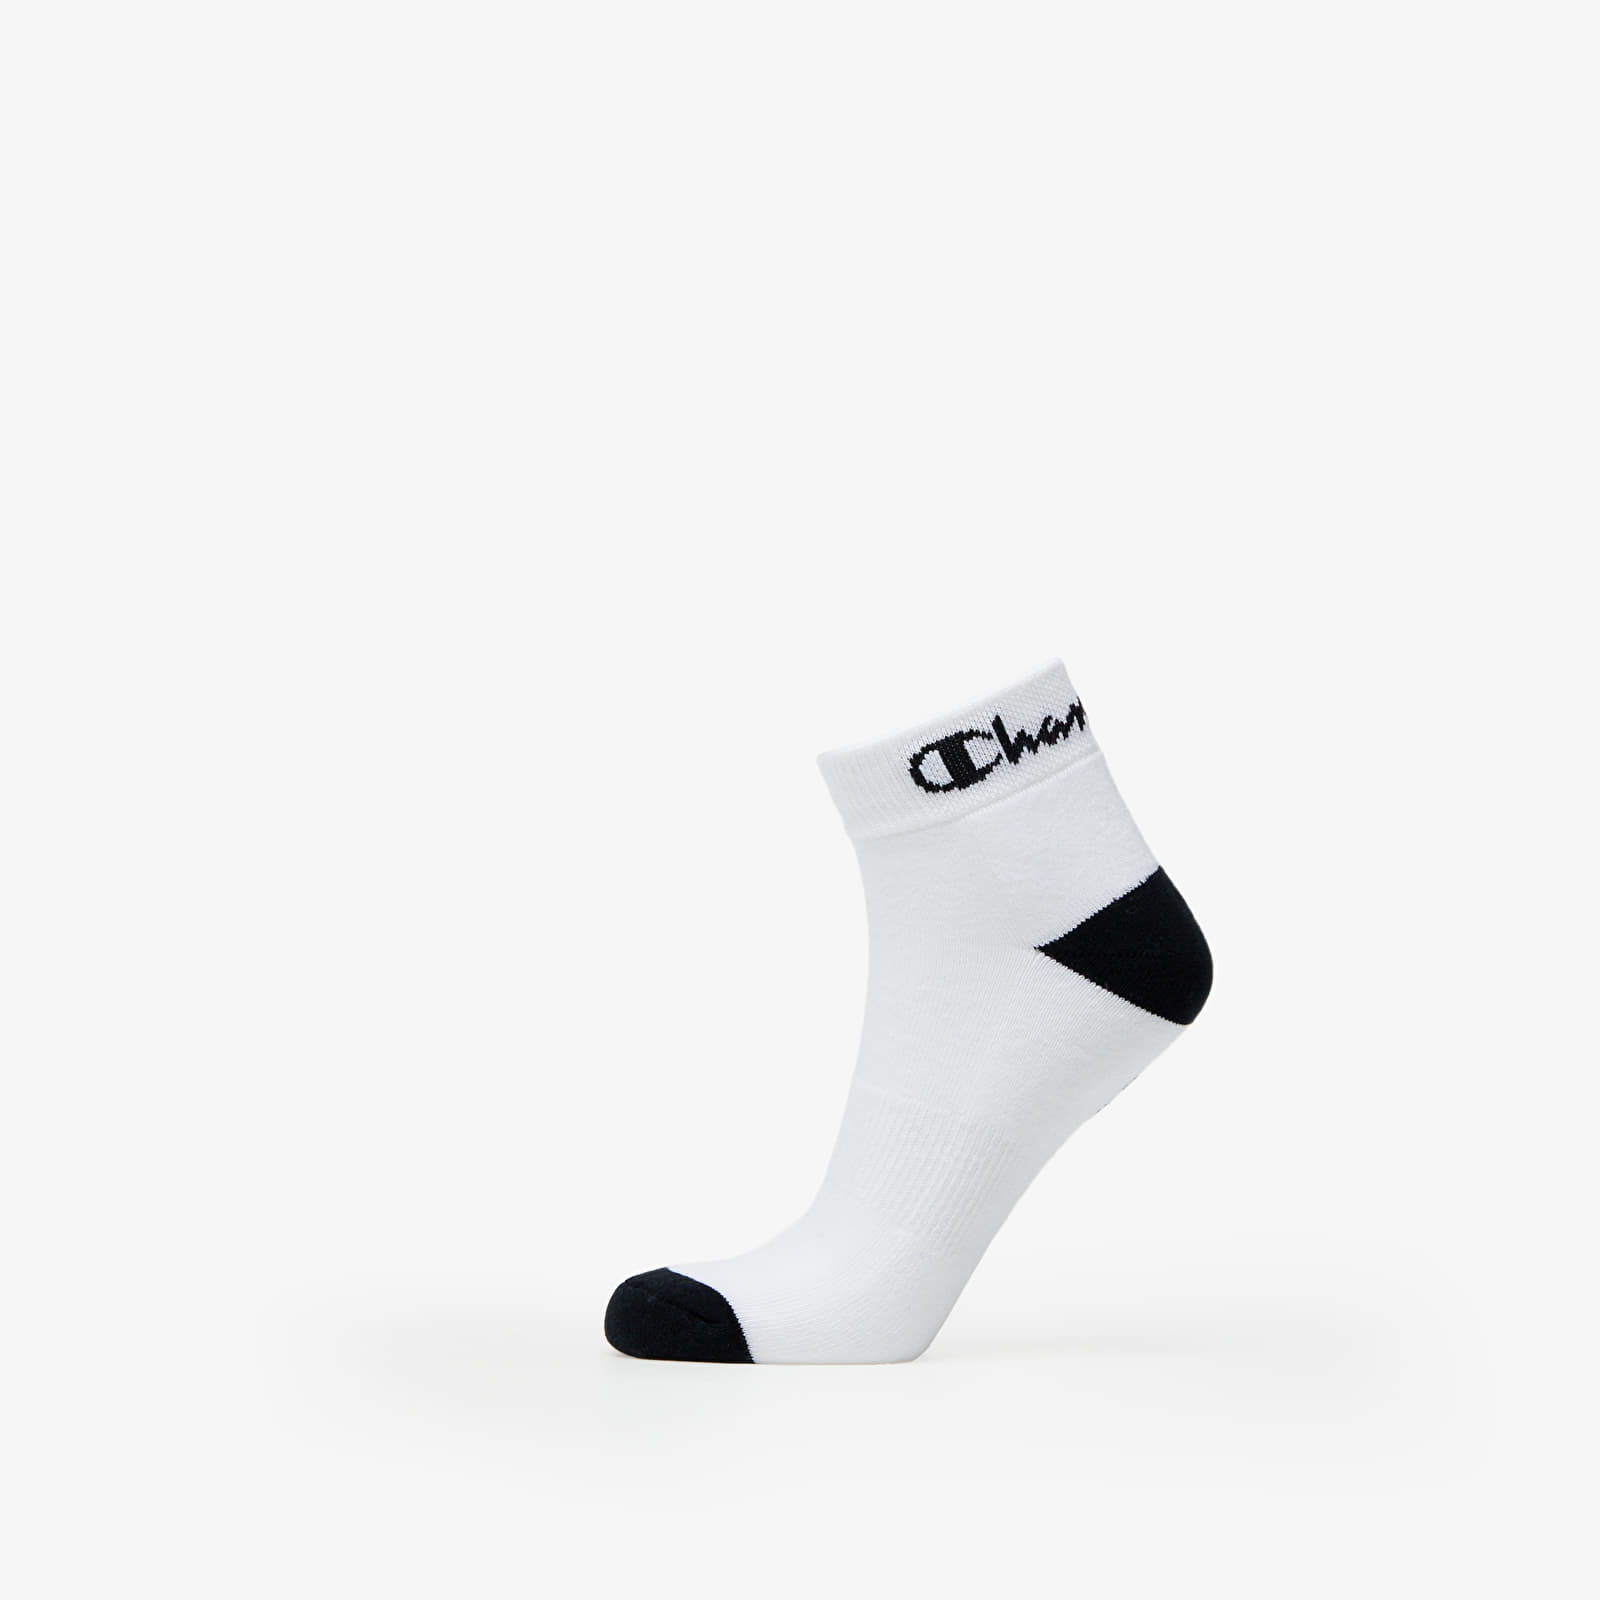 Socks Champion High Performance Ankle Socks White